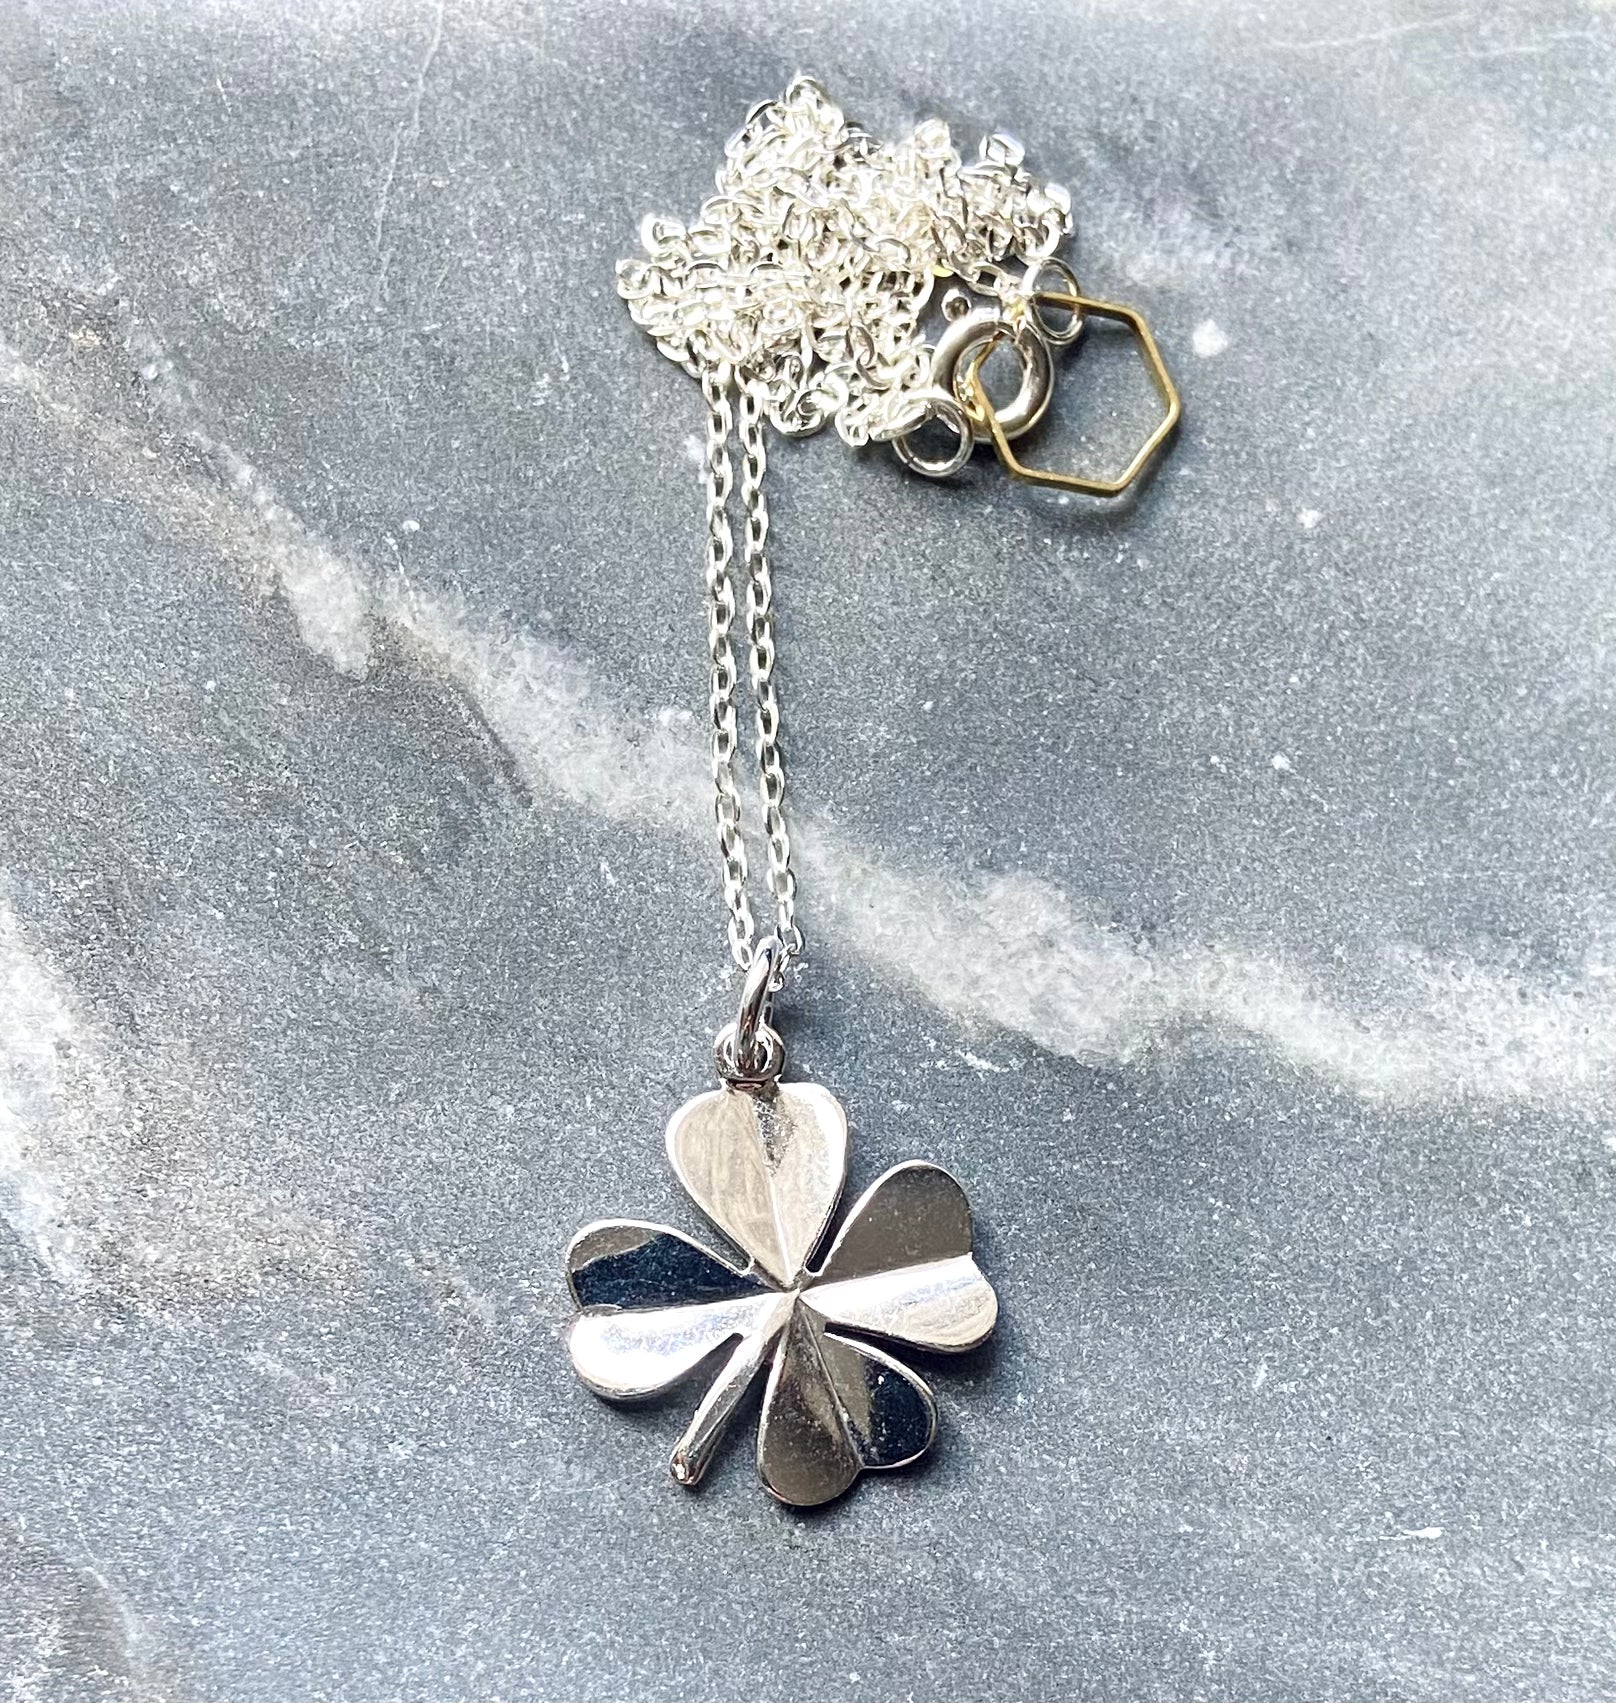 Four Leaves Clover Sterling Silver Bracelet & Necklace Set In